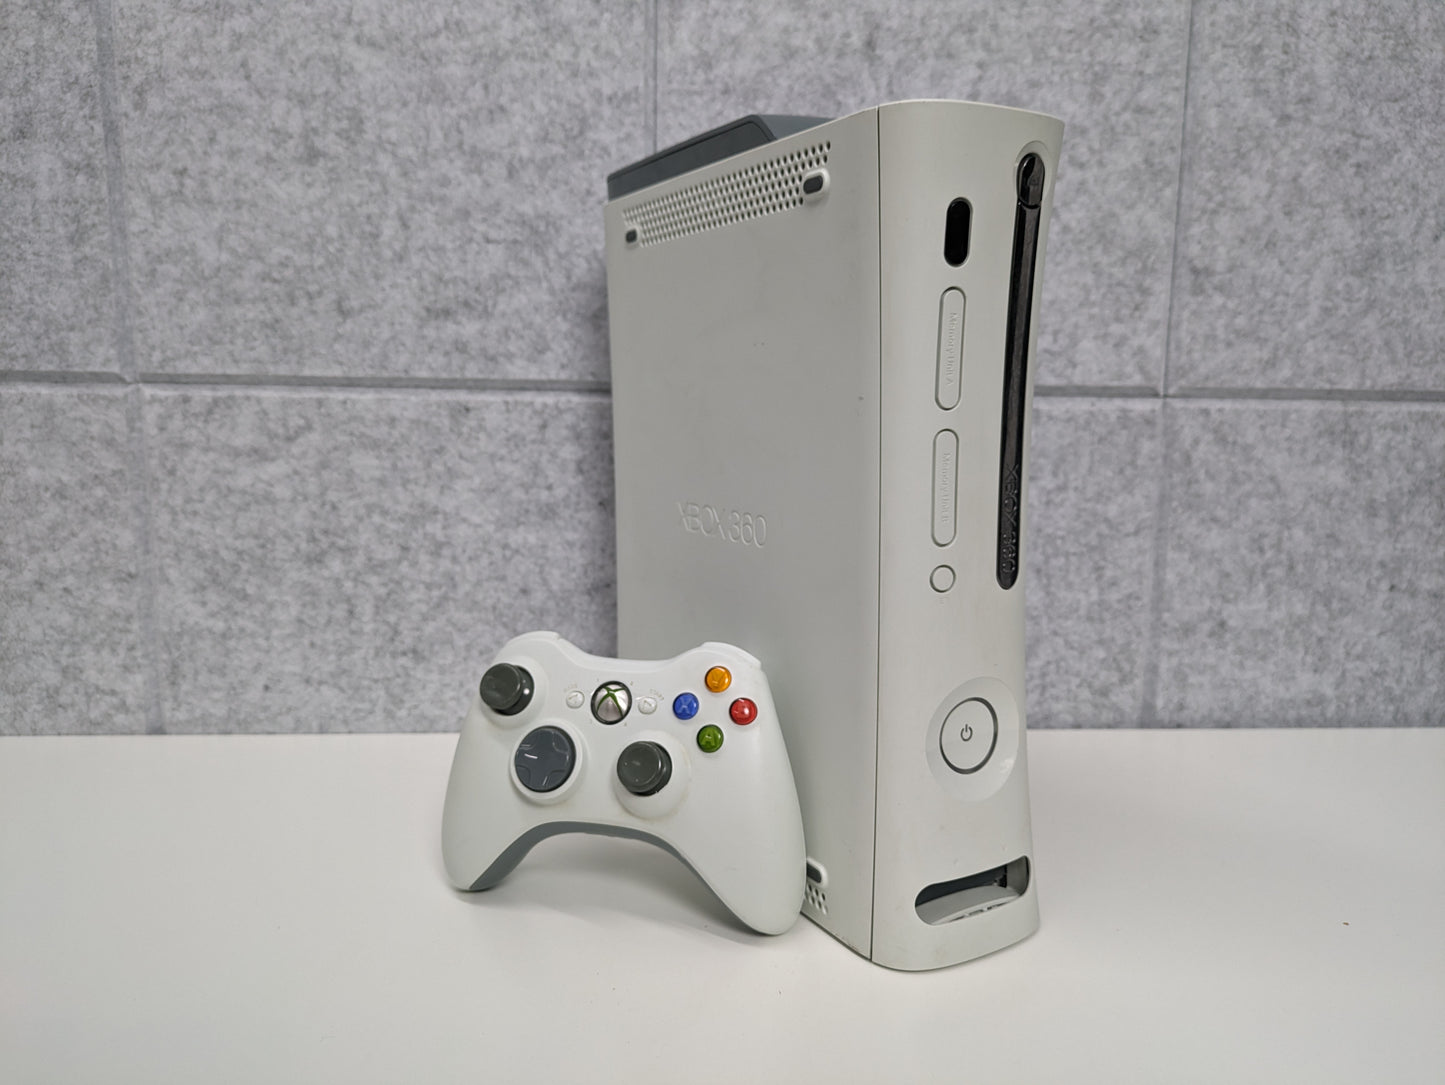 Microsoft 60GB Xbox 360 Falcon Console w/ Controller & Cords - USED (GG44)